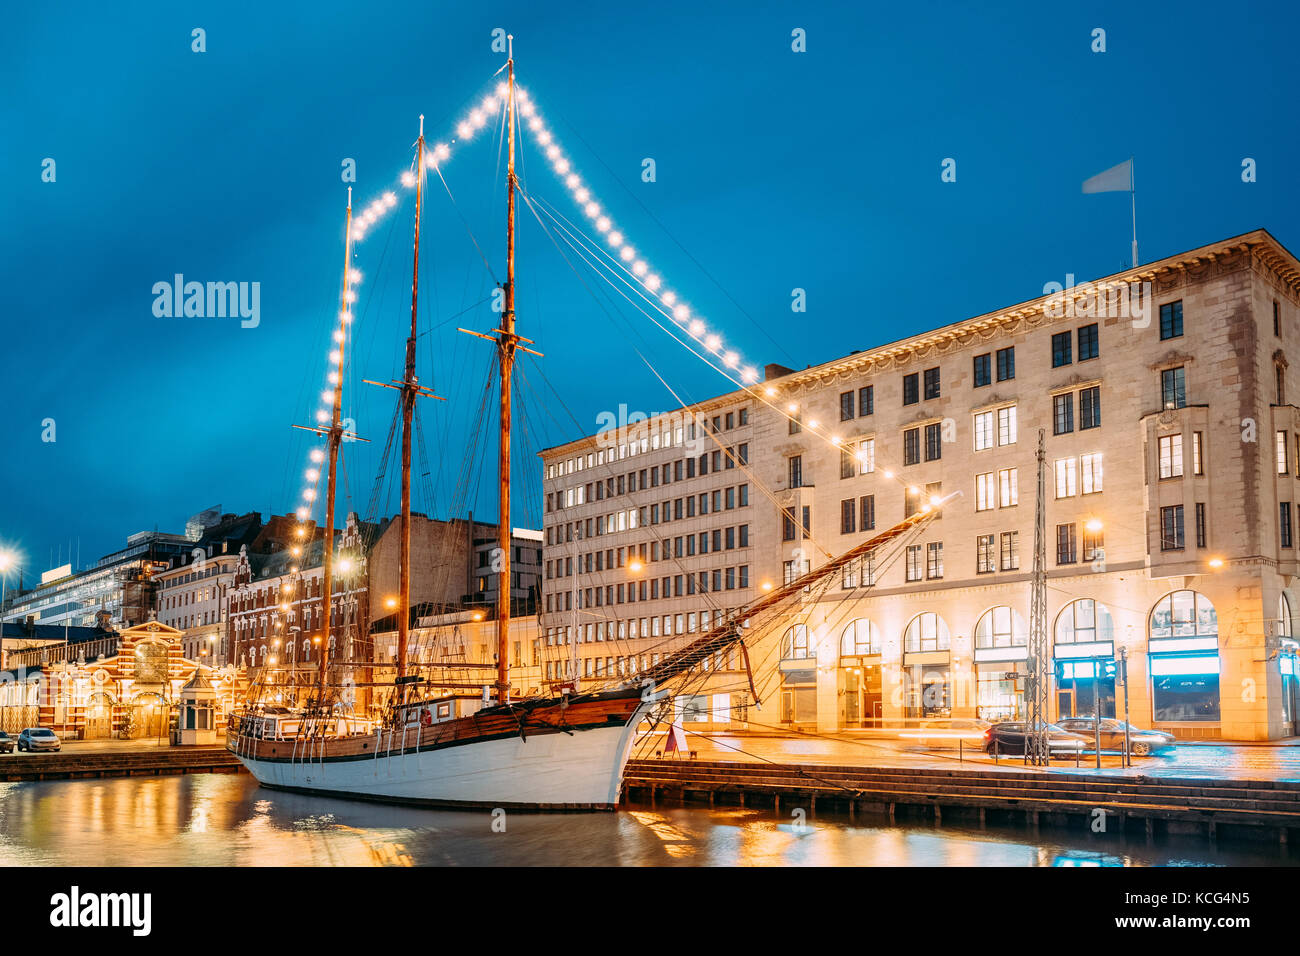 Helsinki, Finnland. Alte hölzerne Segelboot Schiff Schoner ist mit der Stadt pier, Steg vertäut. ungewöhnliche Cafe Restaurant im Stadtzentrum in Beleuchtung in Ev Stockfoto